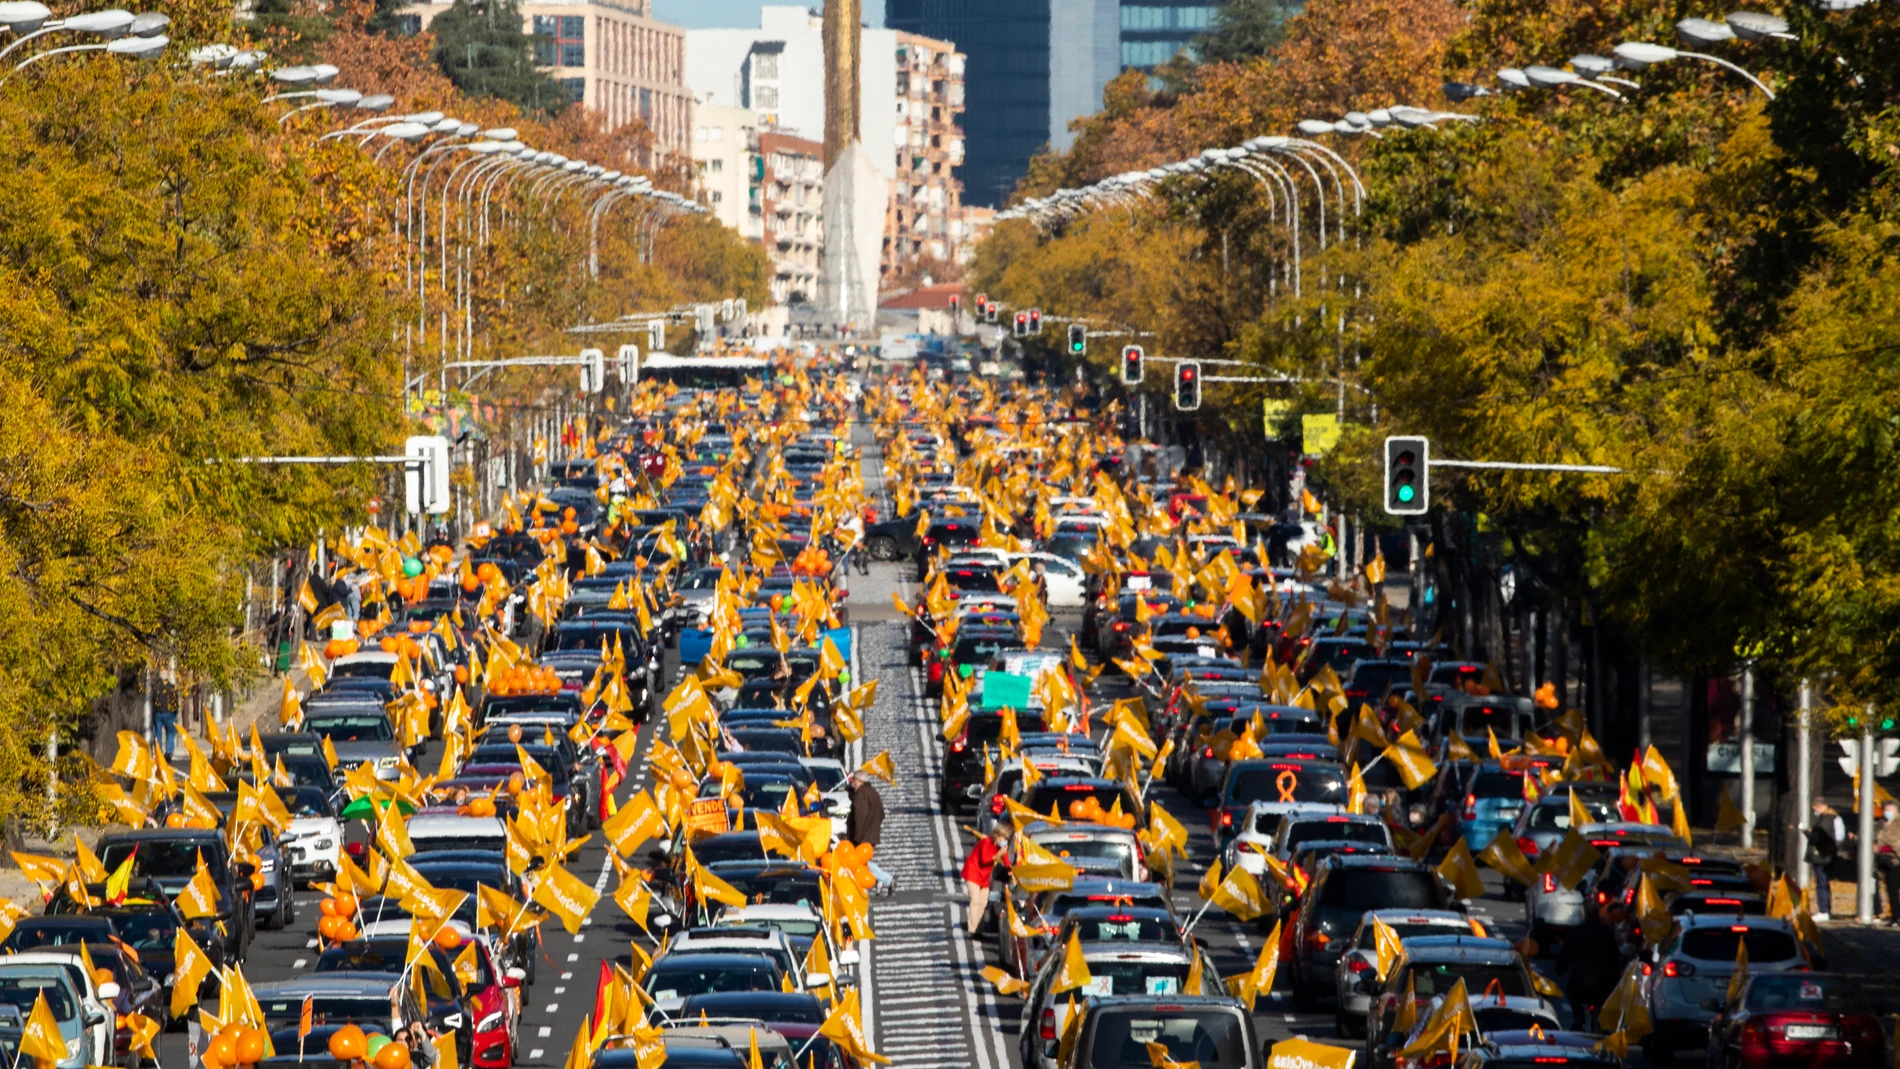 22/11/2020. © Jesús G. Feria.Manifestación en el centro de Madrid contra la Ley Celaa de educación. Centenares de coches protestan por la nueva Ley de educación aprobada esta semana en el Congreso.